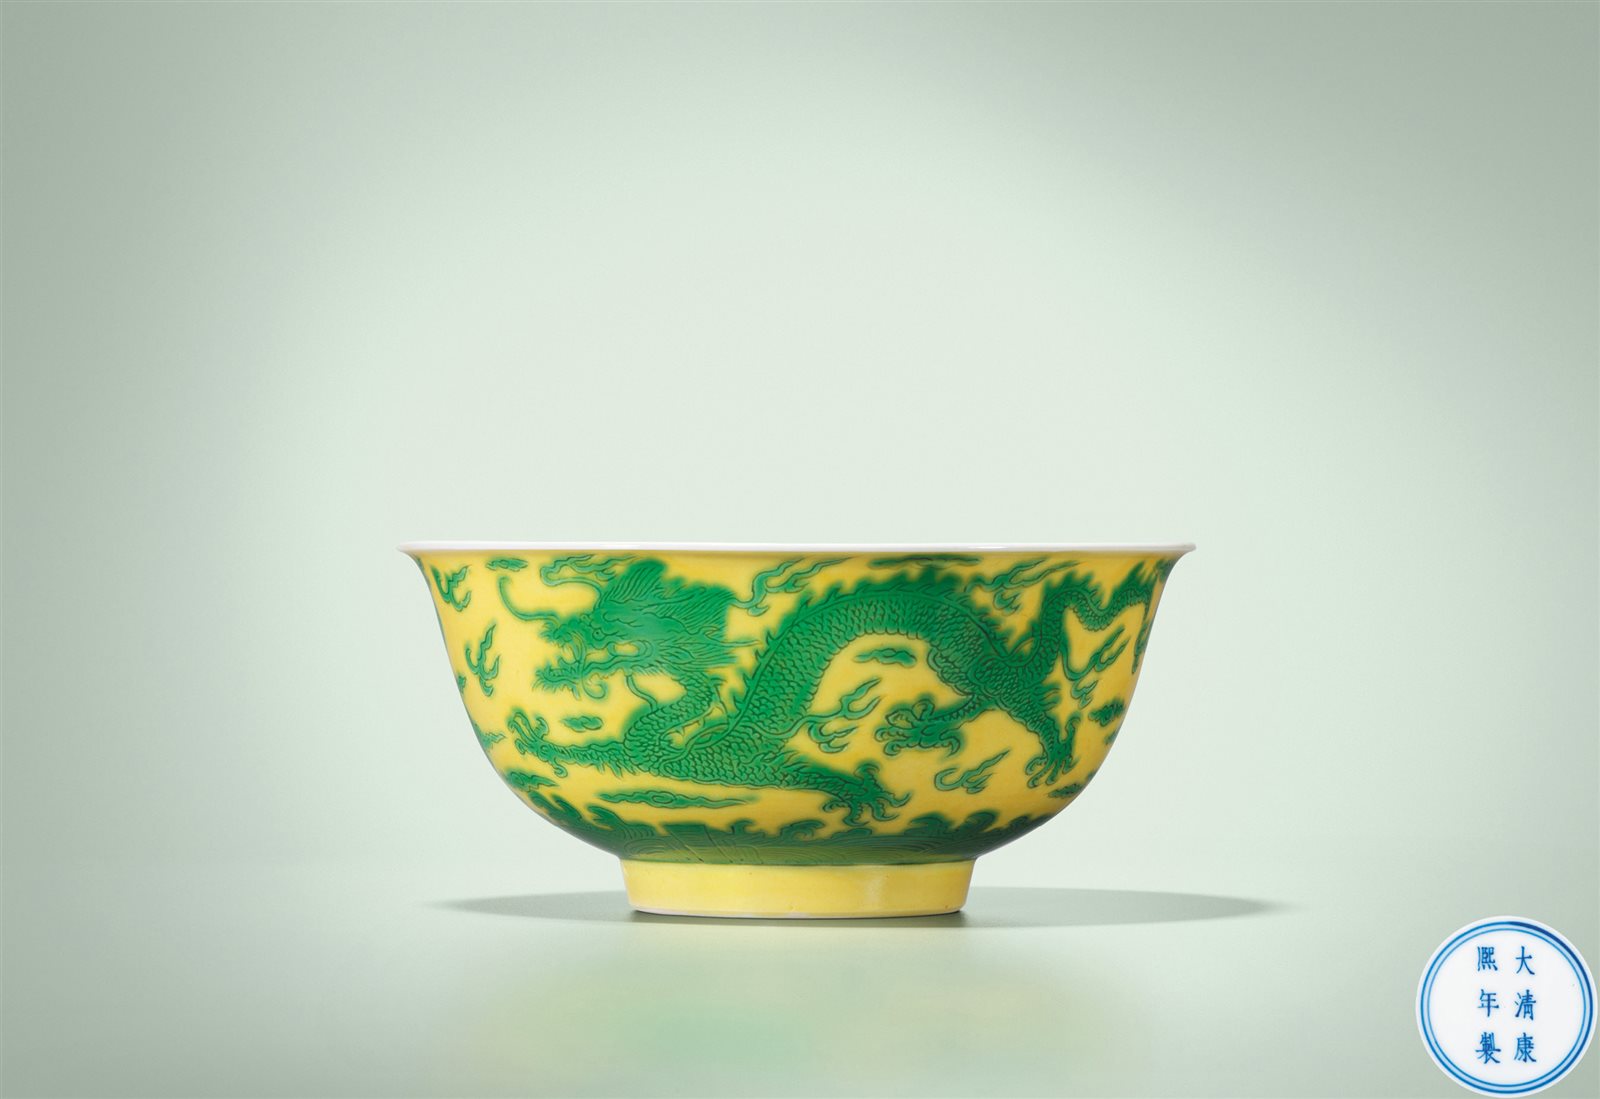 黄地绿彩云龙纹碗